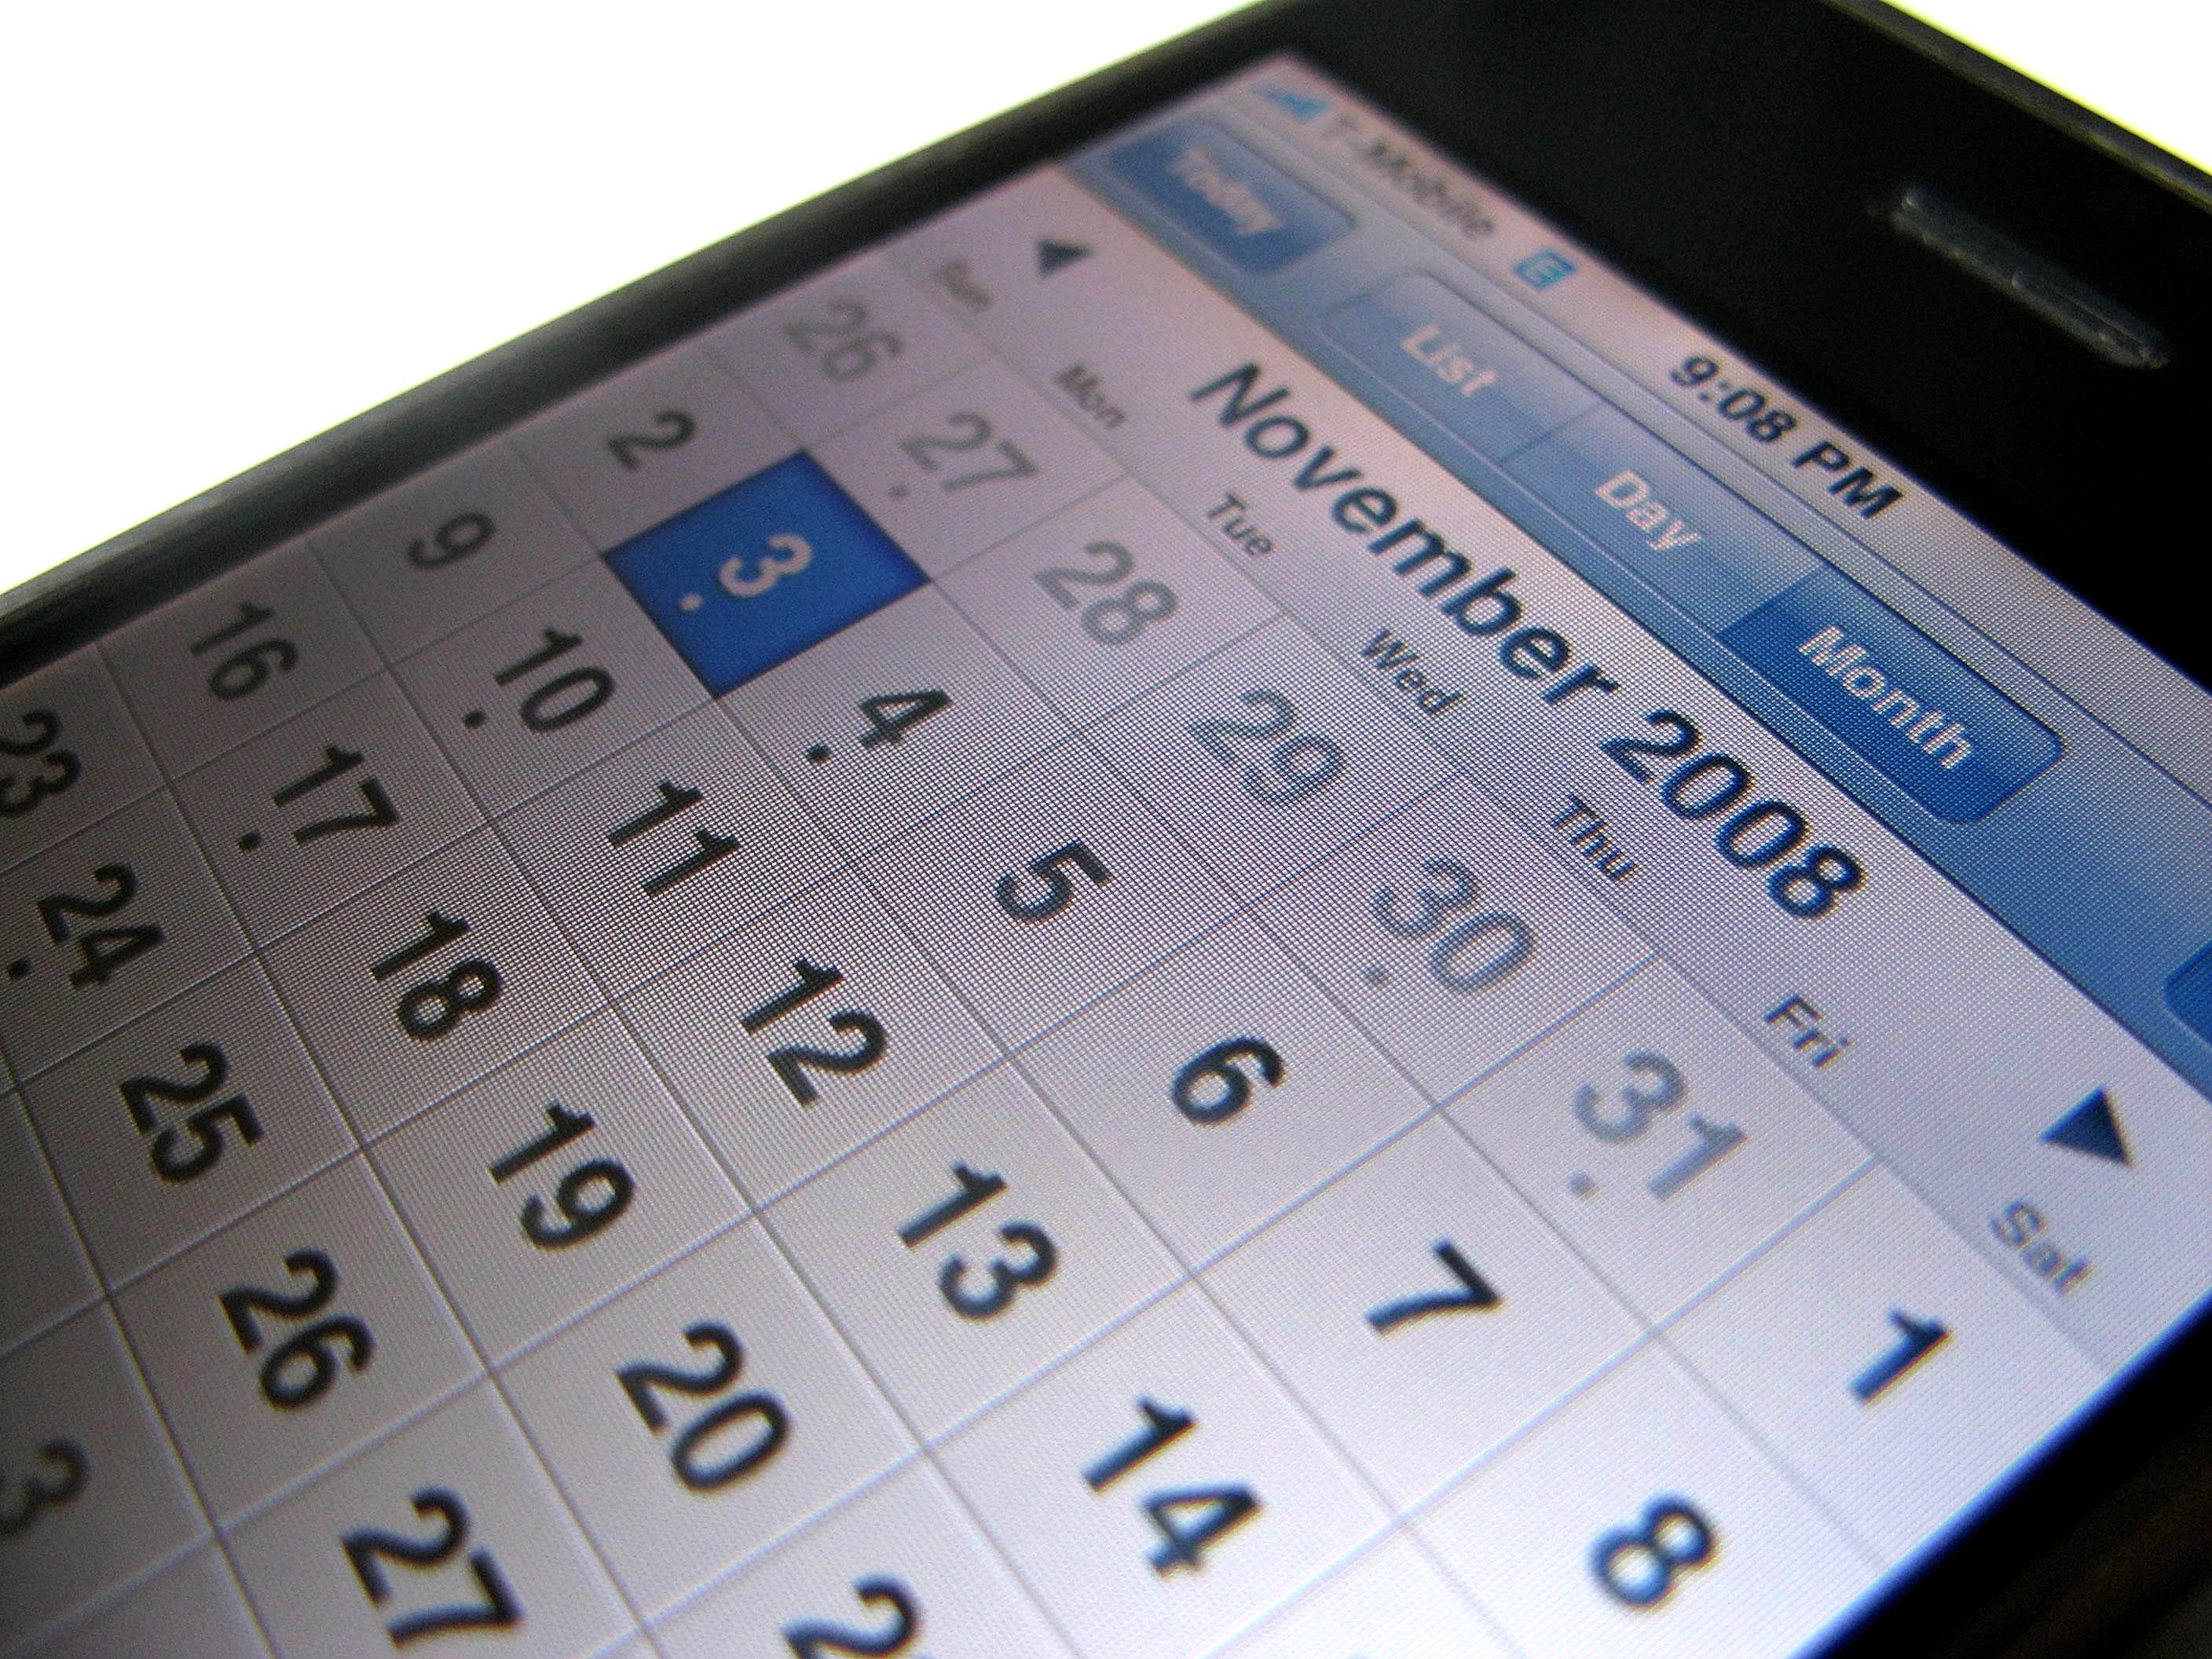 Free picture: iphone calendar screen